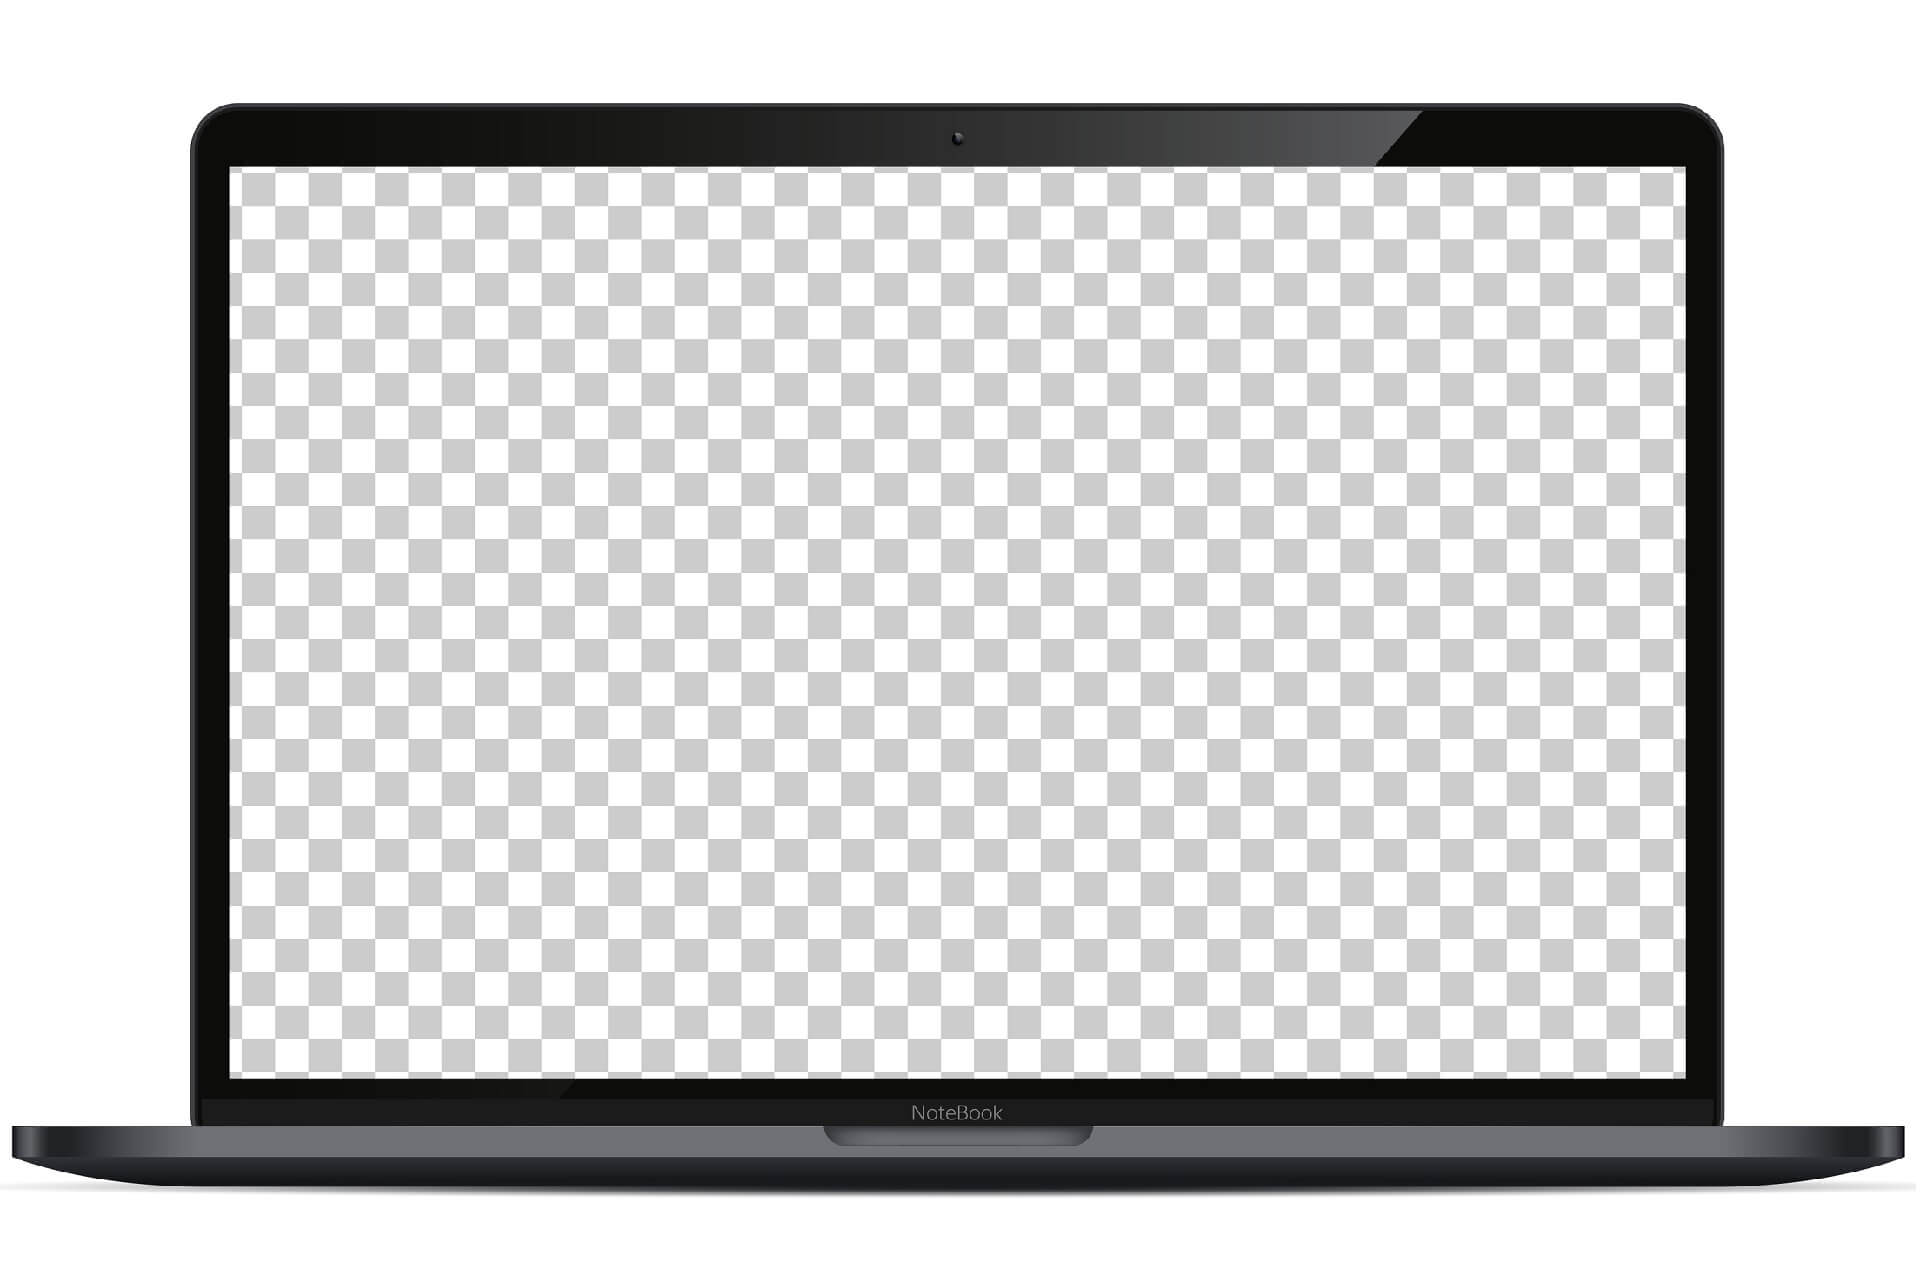 Macbook screen pixelated or blurry